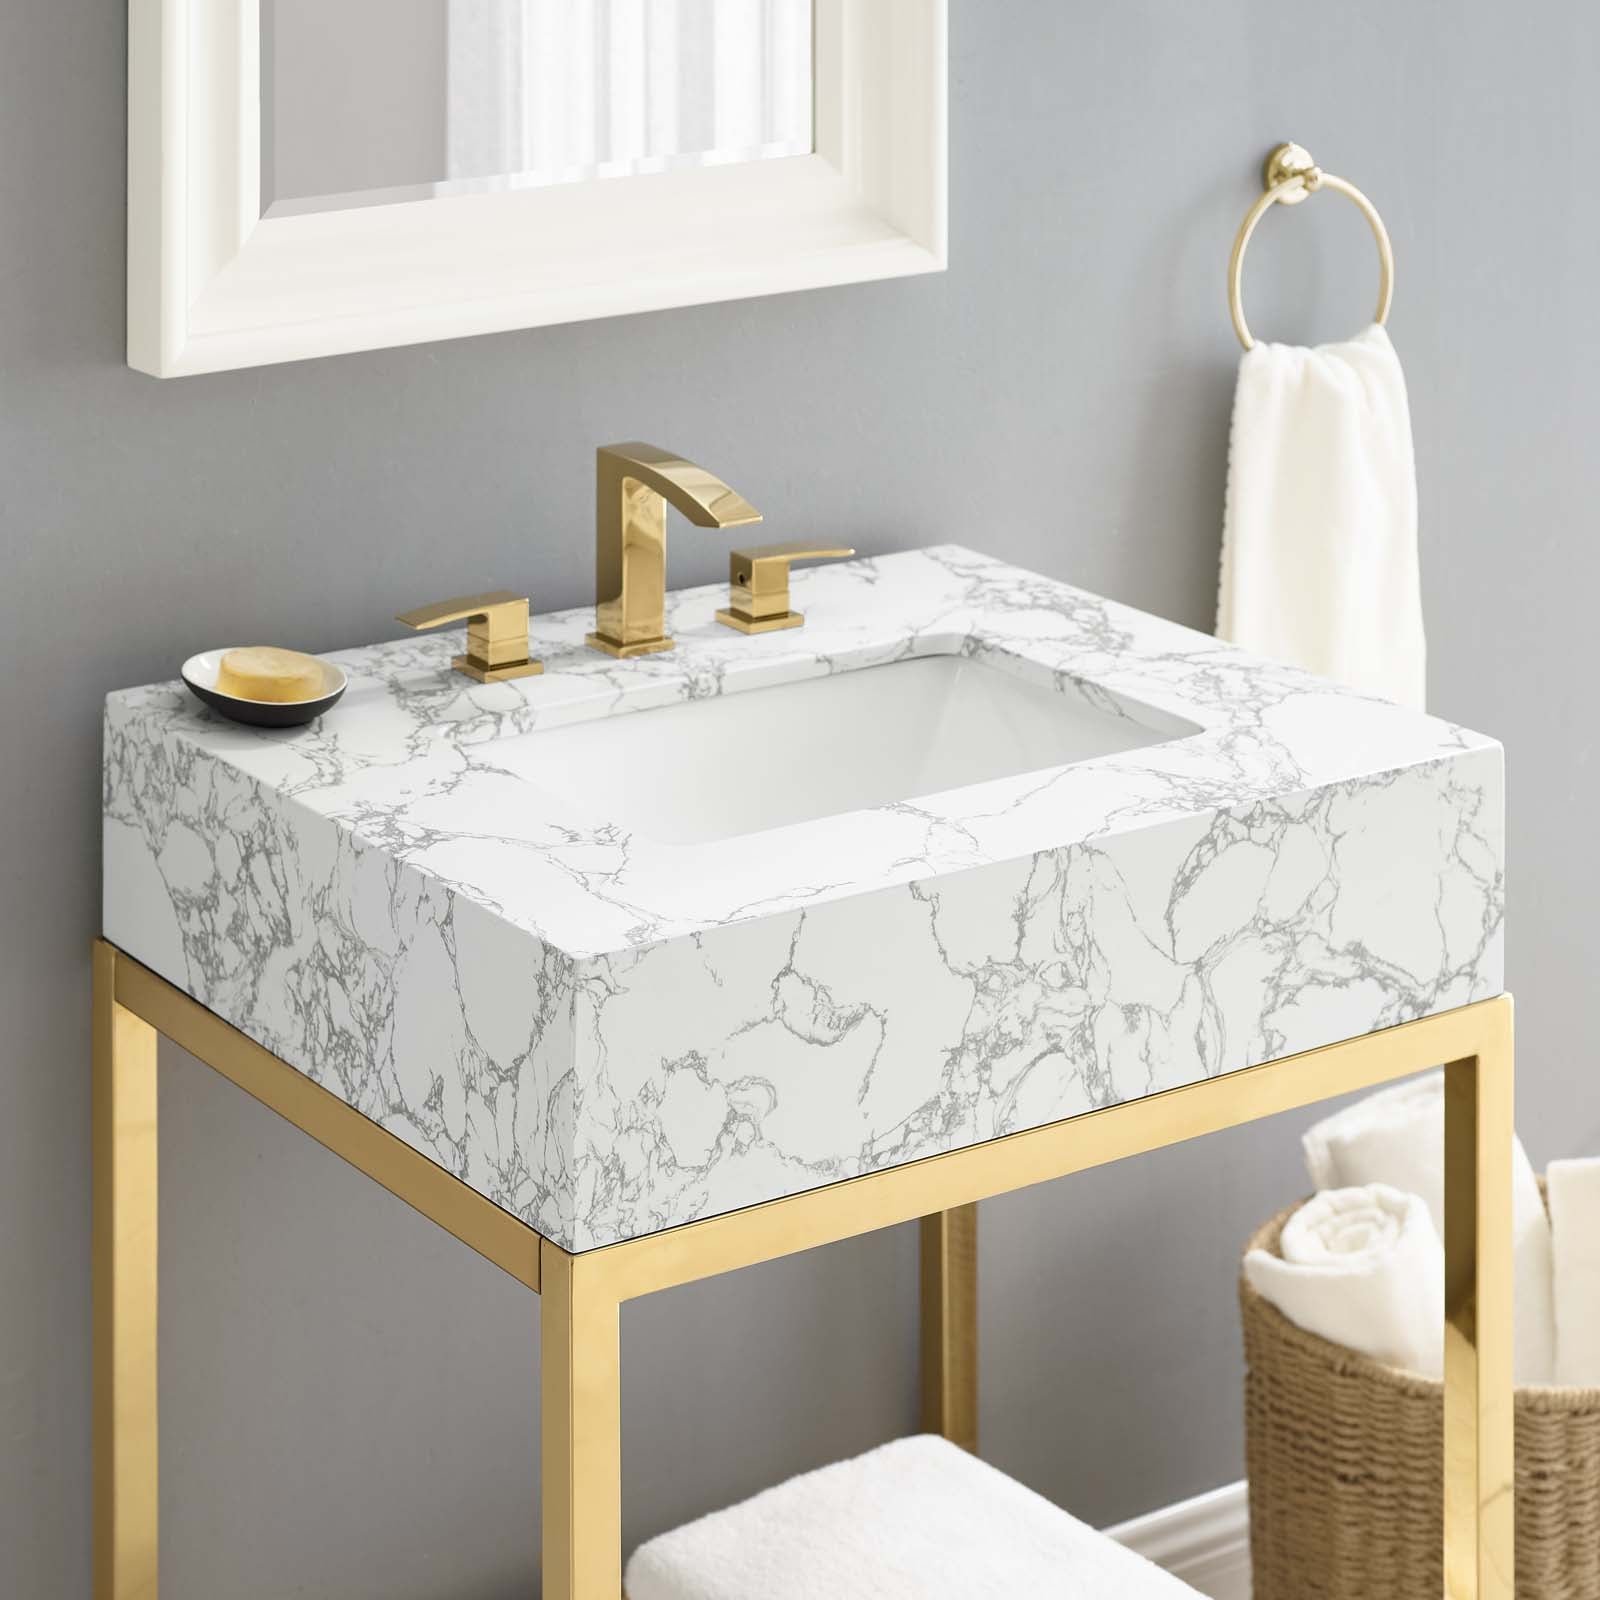 Kingsley 26" Gold Stainless Steel Bathroom Vanity-Bathroom Vanity-Modway-Wall2Wall Furnishings